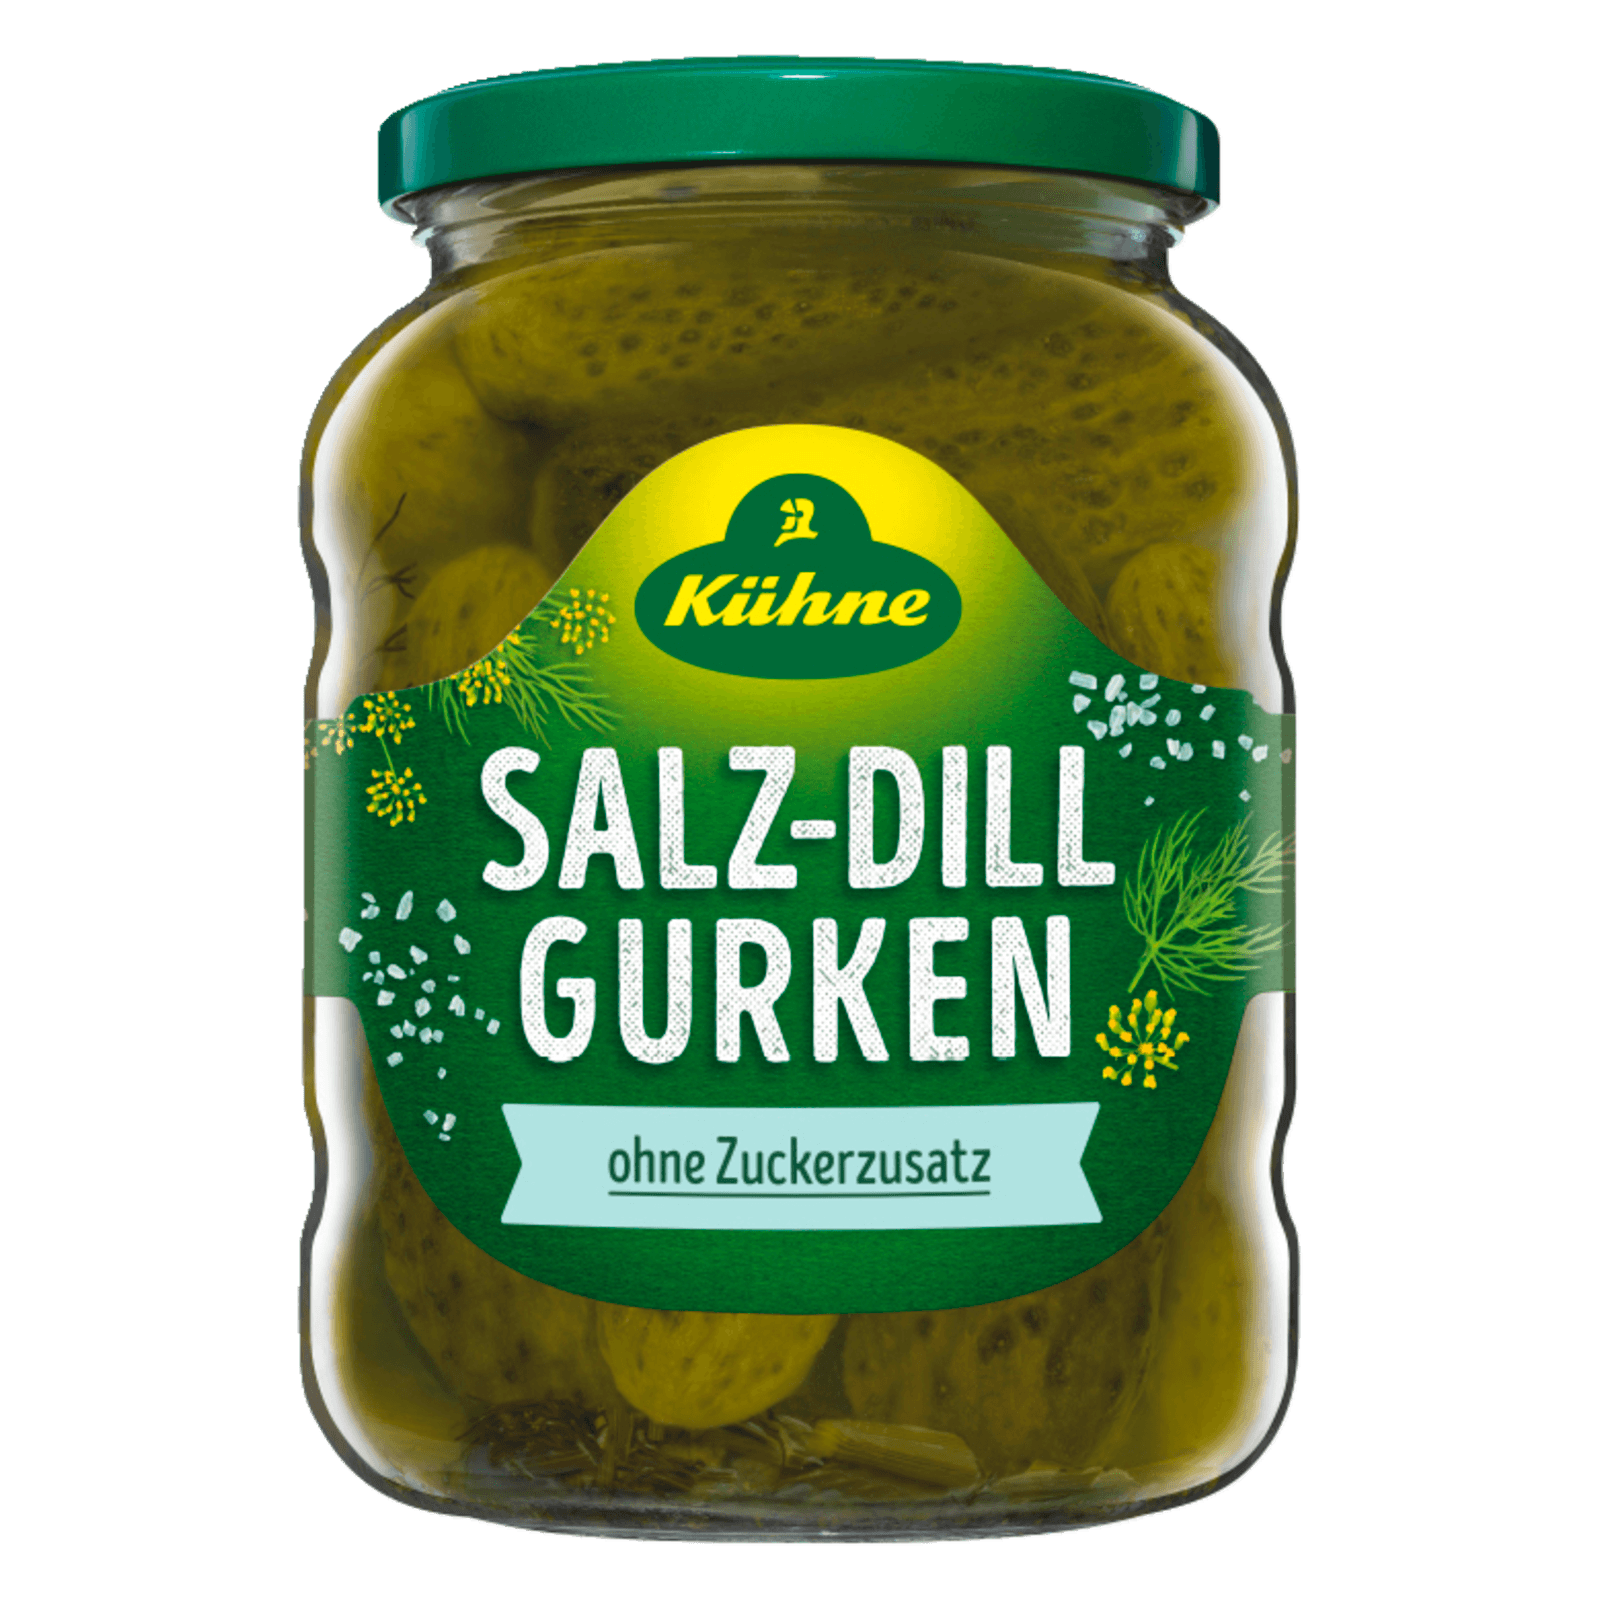 Kühne Salz-Dill-Gurken 370ml bei REWE online bestellen!